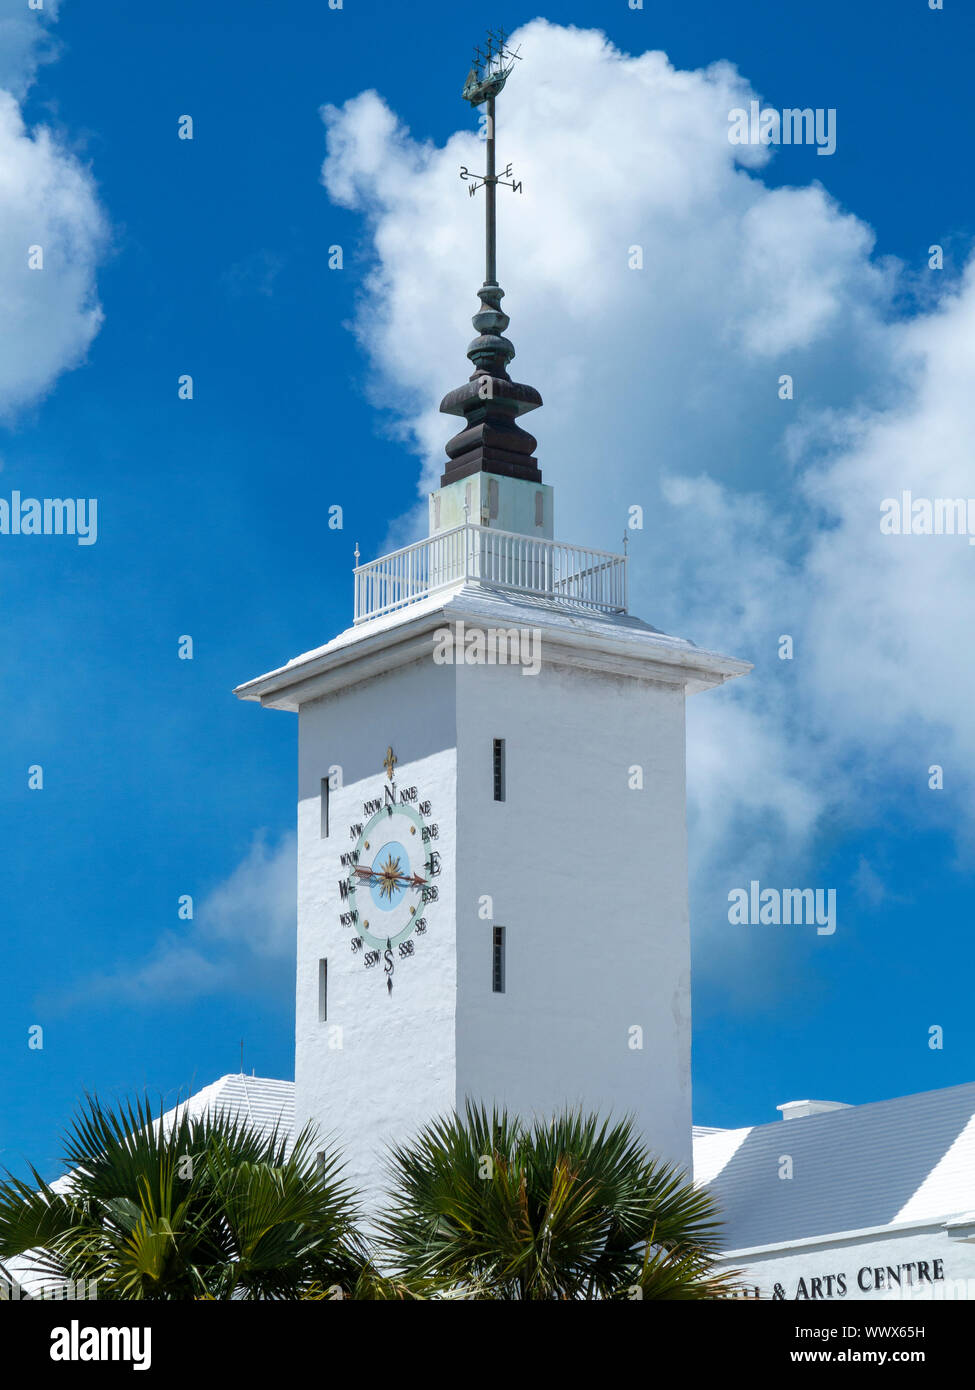 Tour de l'horloge de l'hôtel de ville et du centre des arts de Hamilton, Hamilton, Bermudes contre un ciel bleu et des nuages blancs Banque D'Images